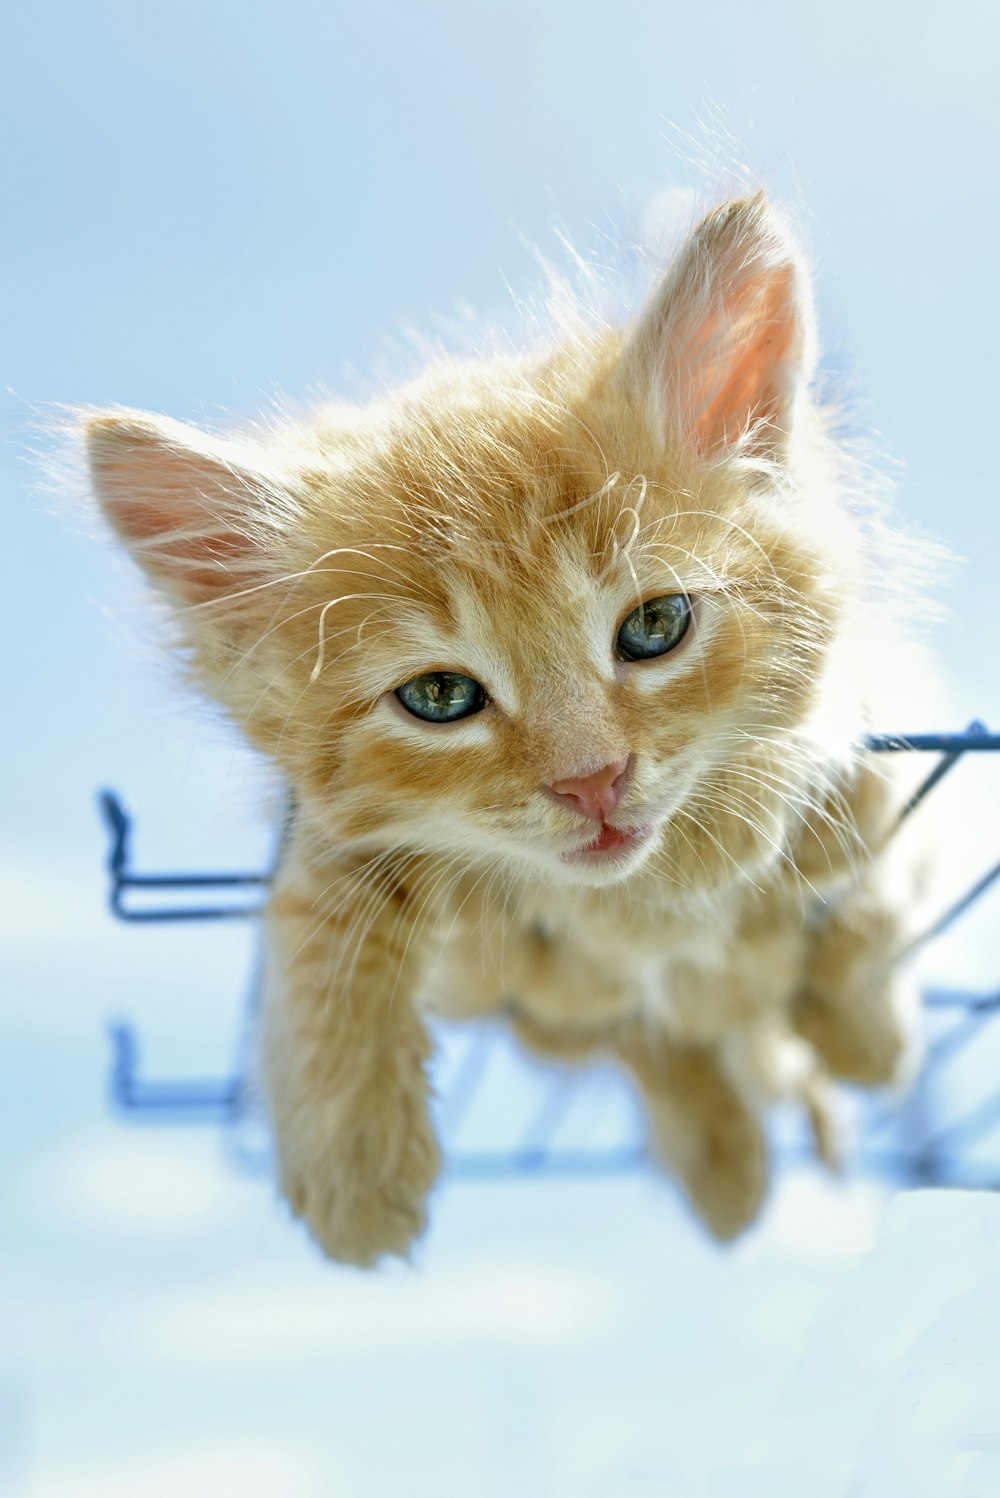 orange tabby kitten on blue metal wire fence